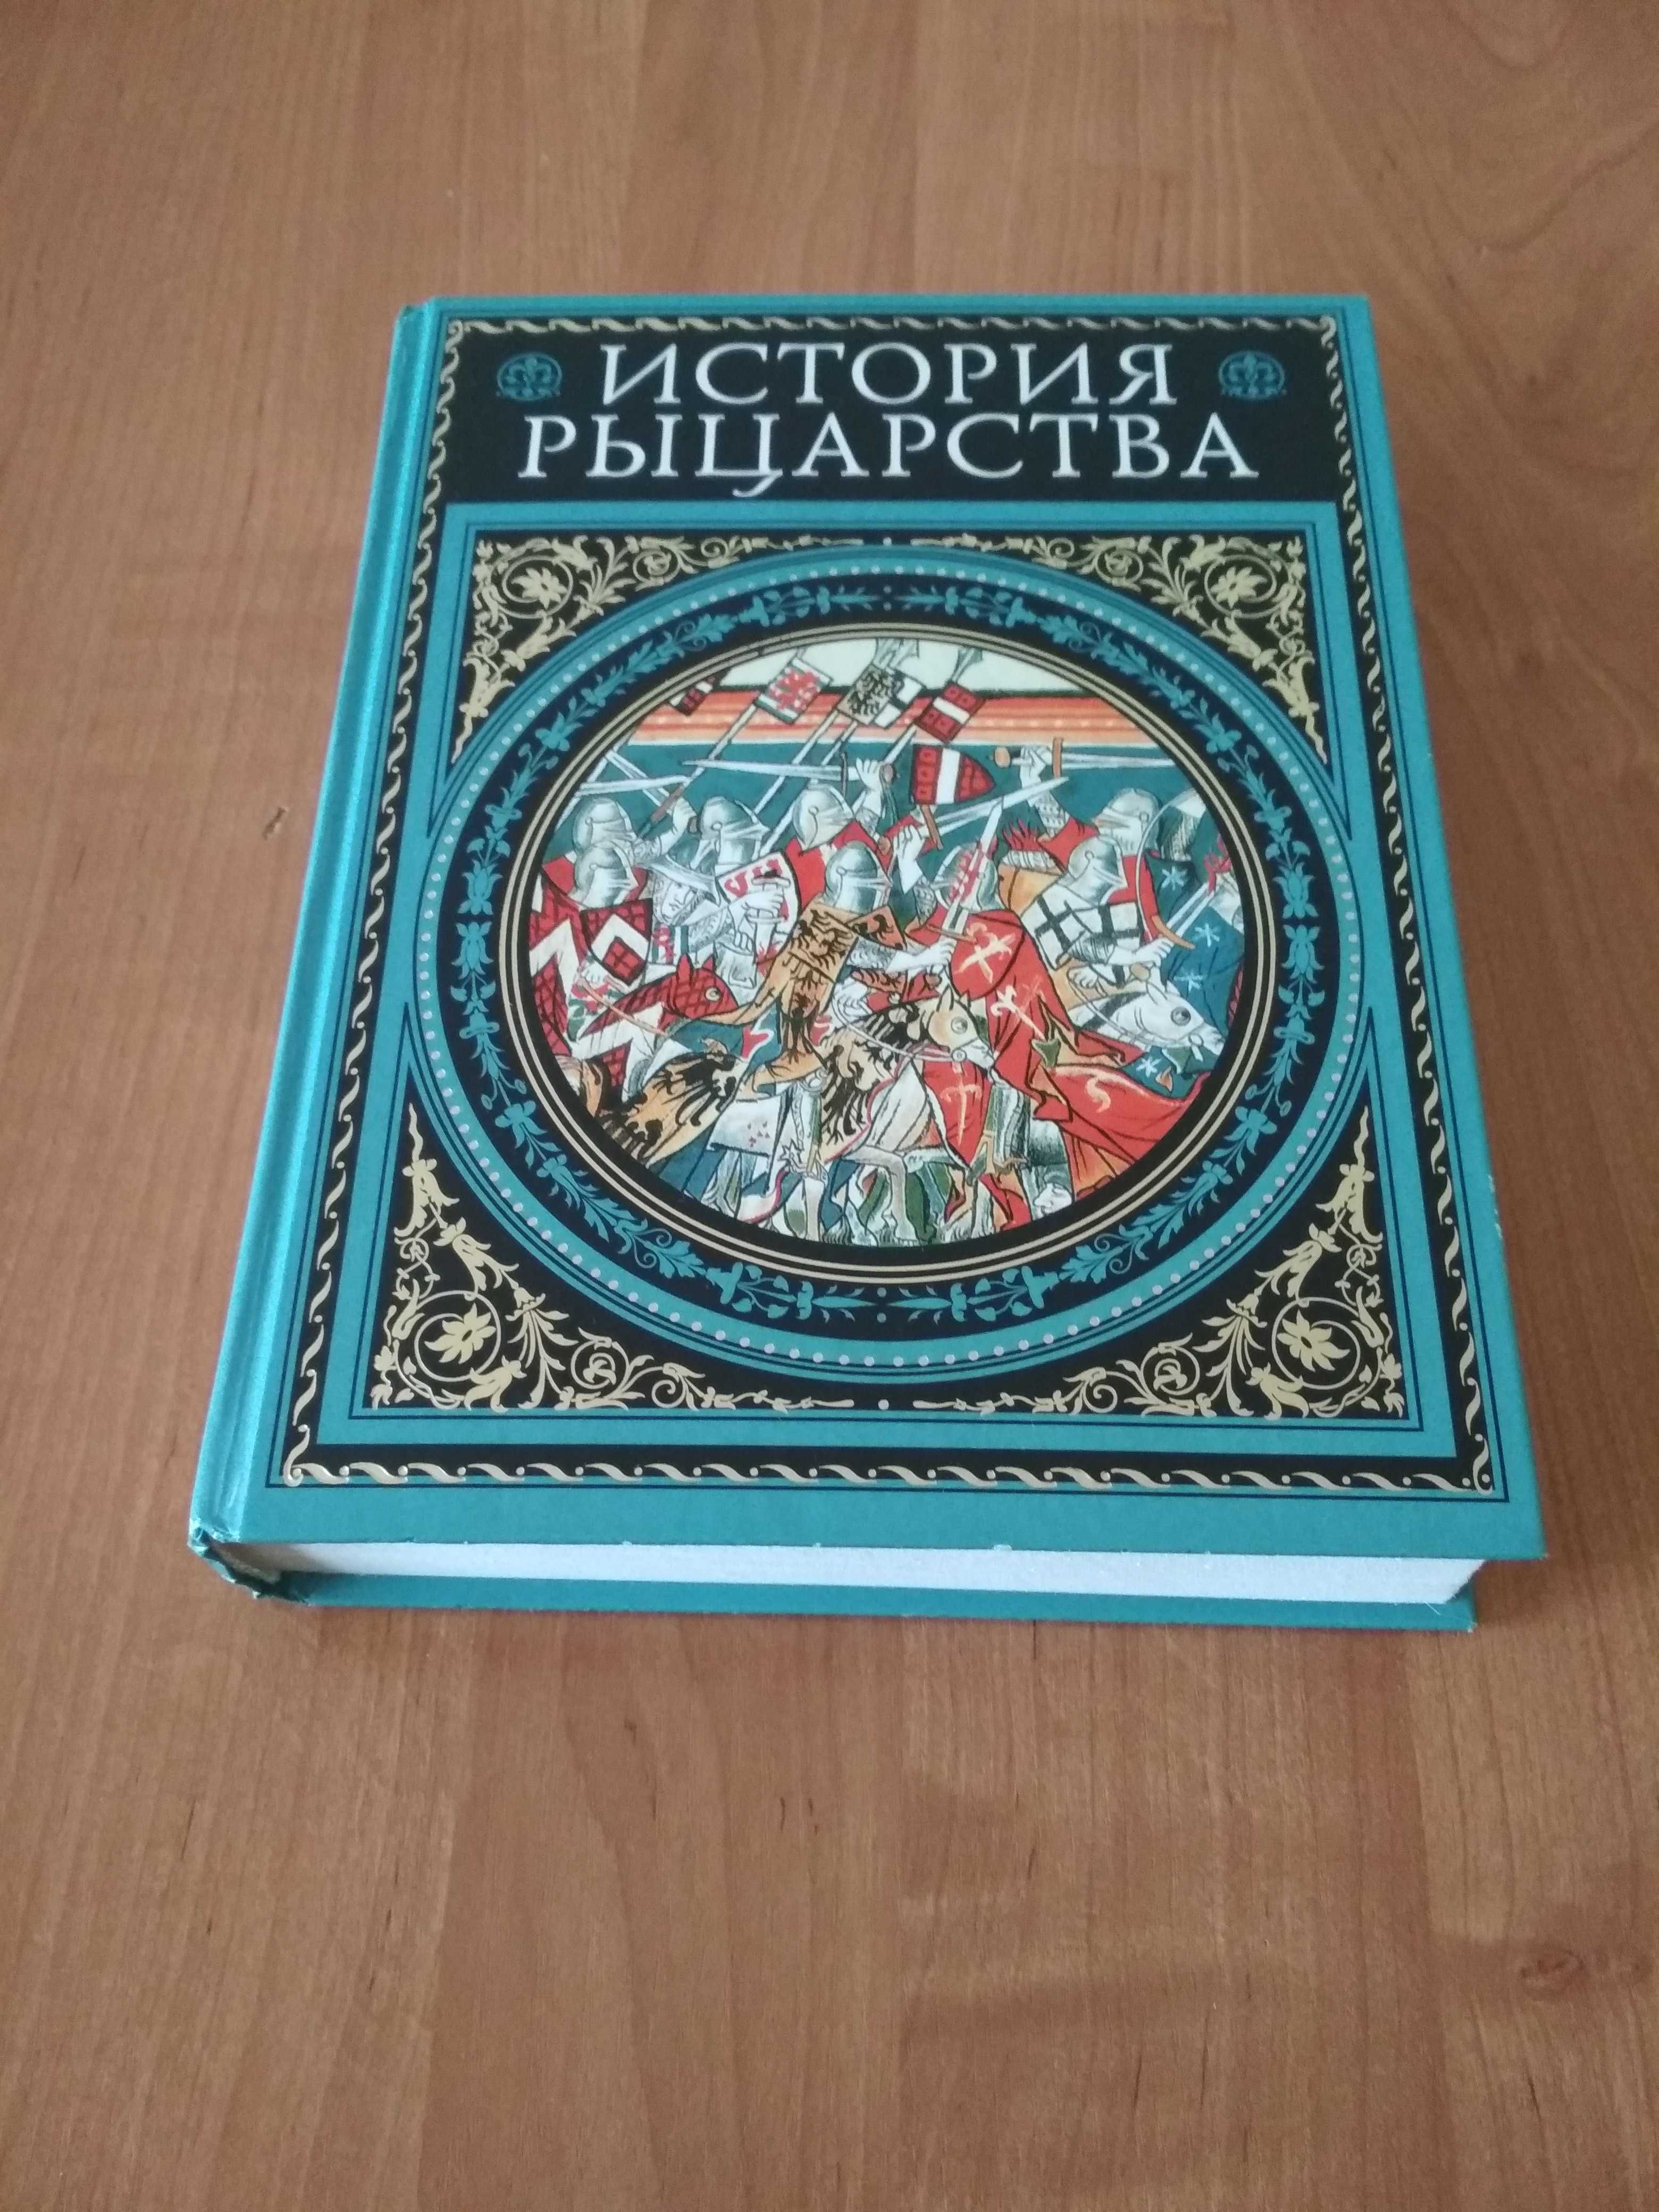 «История рыцарства» Ж. Руа, Ж. Мишо (авторы XIX в.).